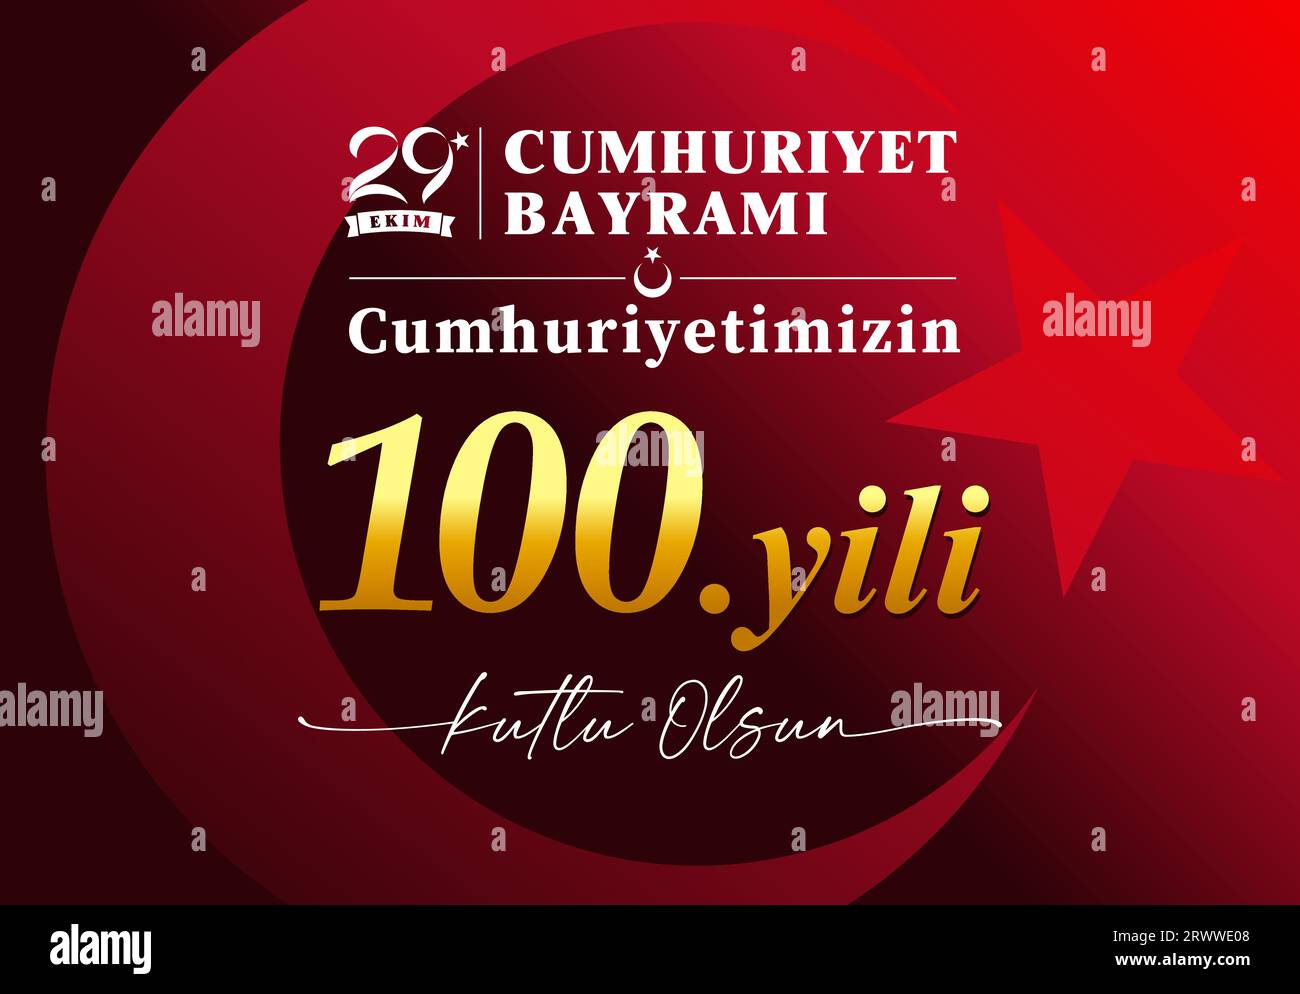 100 Jahre Jubiläum 29 Ekim, Cumhuriyet Bayrami rotes Banner. Übersetzung aus türkisch - Oktober 29, Tag der Republik 100 Jahre, froher Urlaub. Vektor Stock Vektor